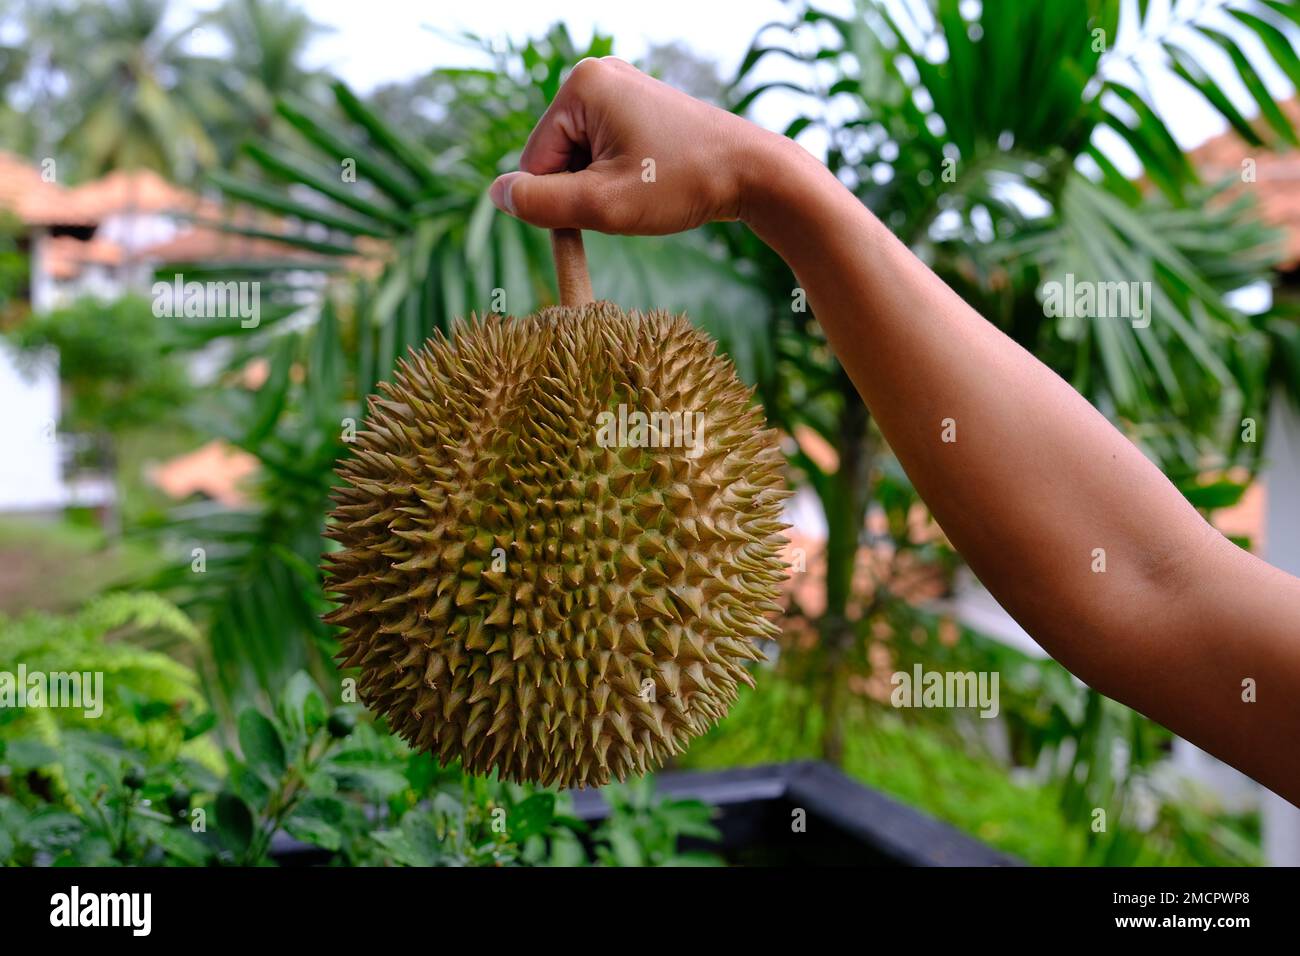 Indonesien Batam - Durian - König der Früchte Stockfoto